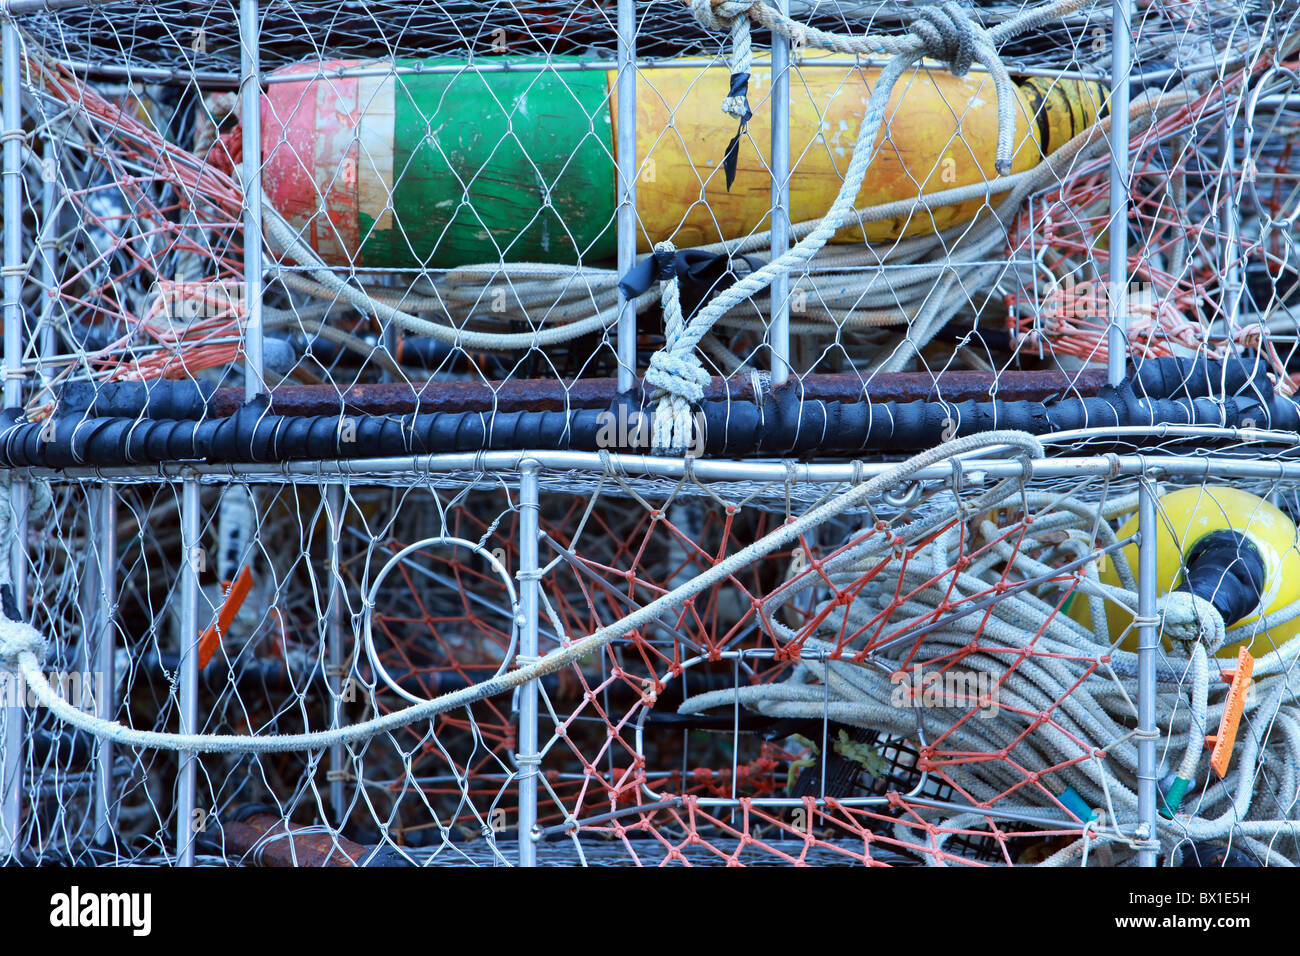 Un colorido pila de pesca antiguo potes, cangrejo y langosta cestas con cuerdas, mallas y coloridos boyas en Prince Rupert, Canadá Foto de stock